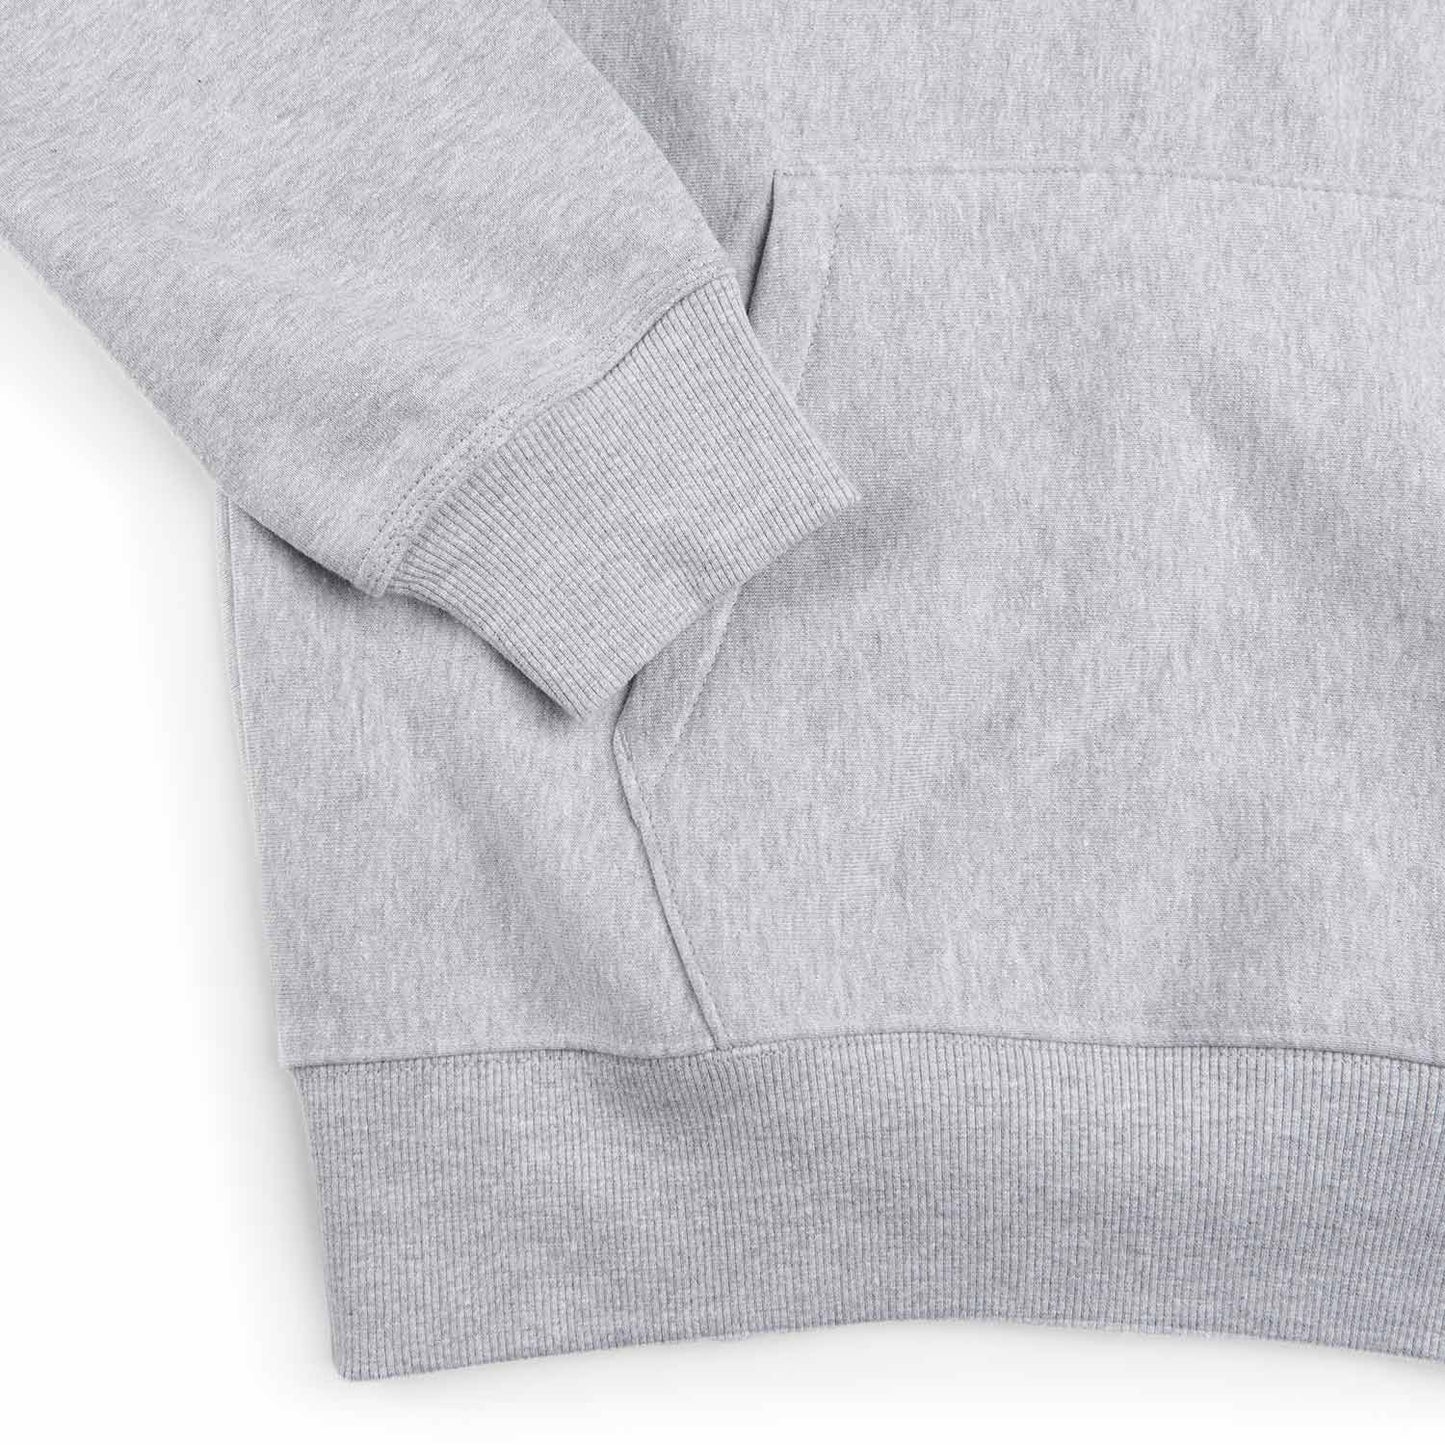 stüssy stock logo hoodie (grey heather)